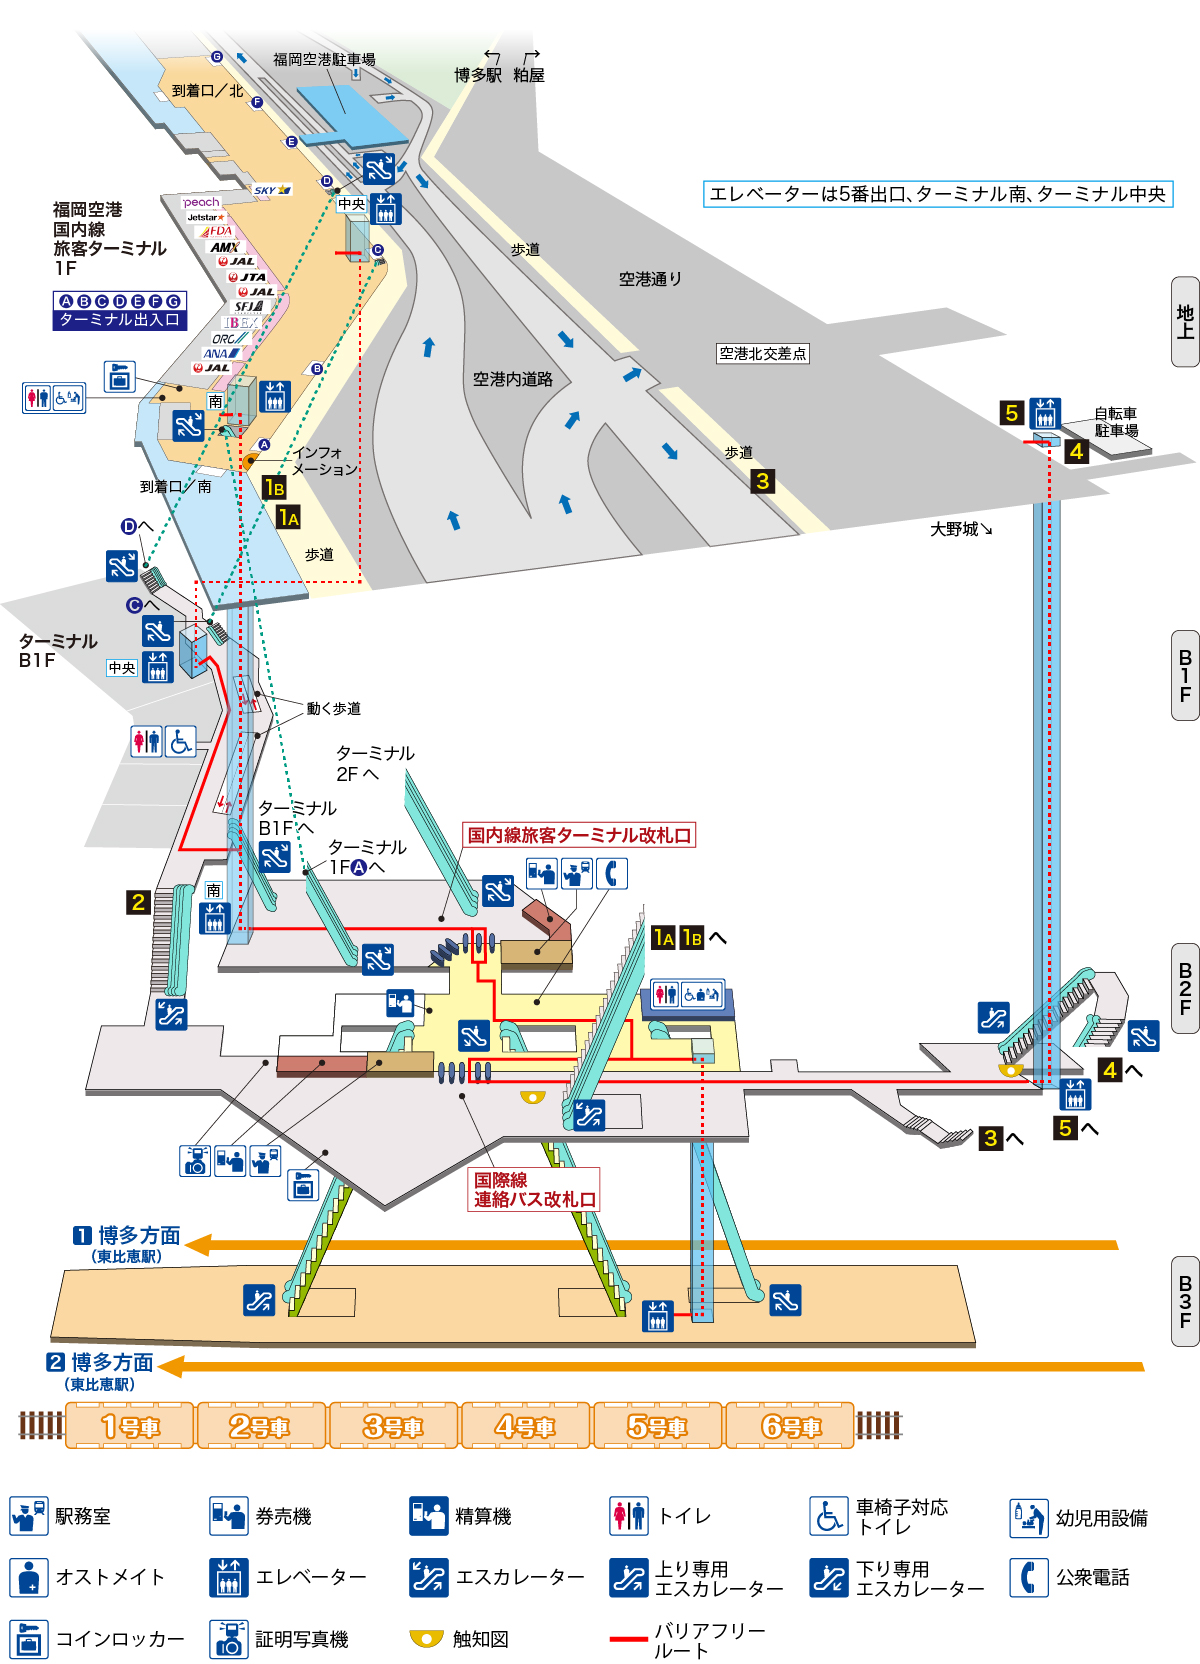 福岡空港駅立体図